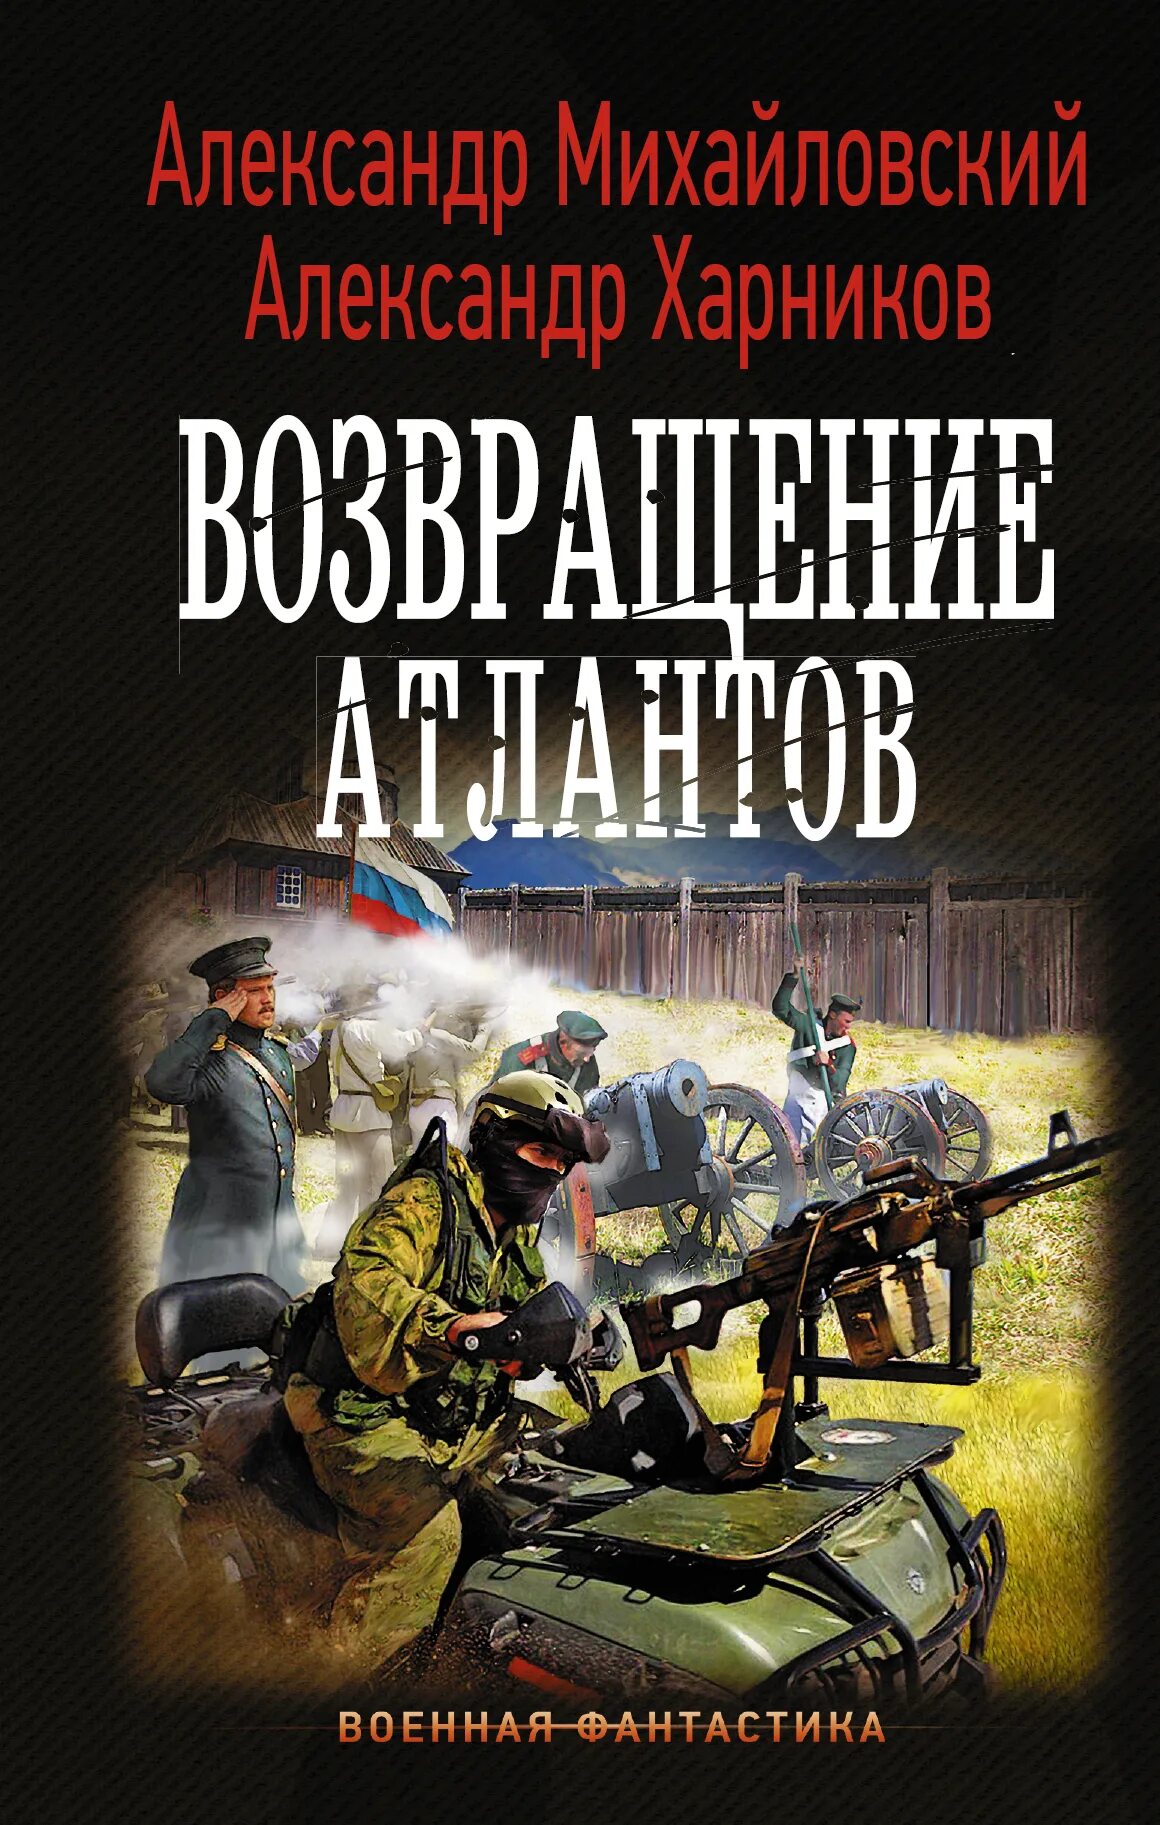 Читать русскую альтернативную историю